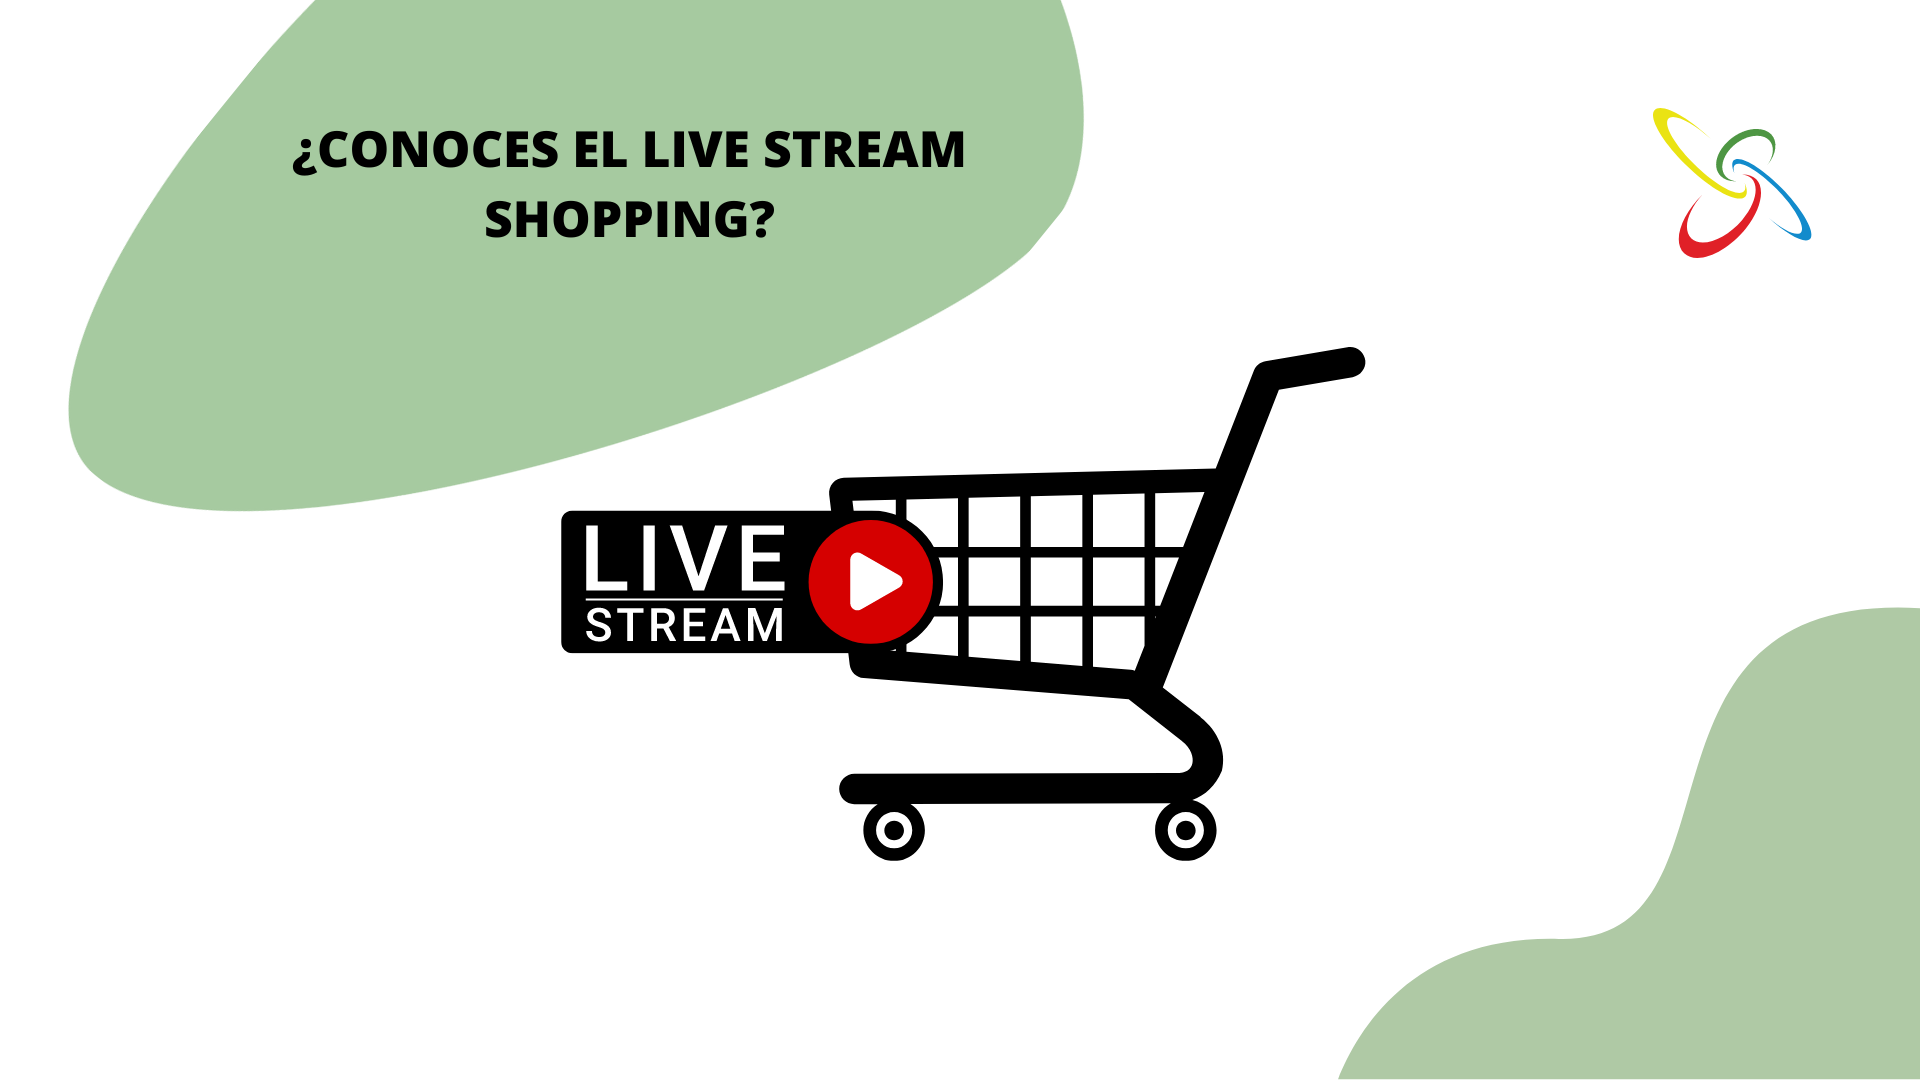 Do you know live stream shopping?